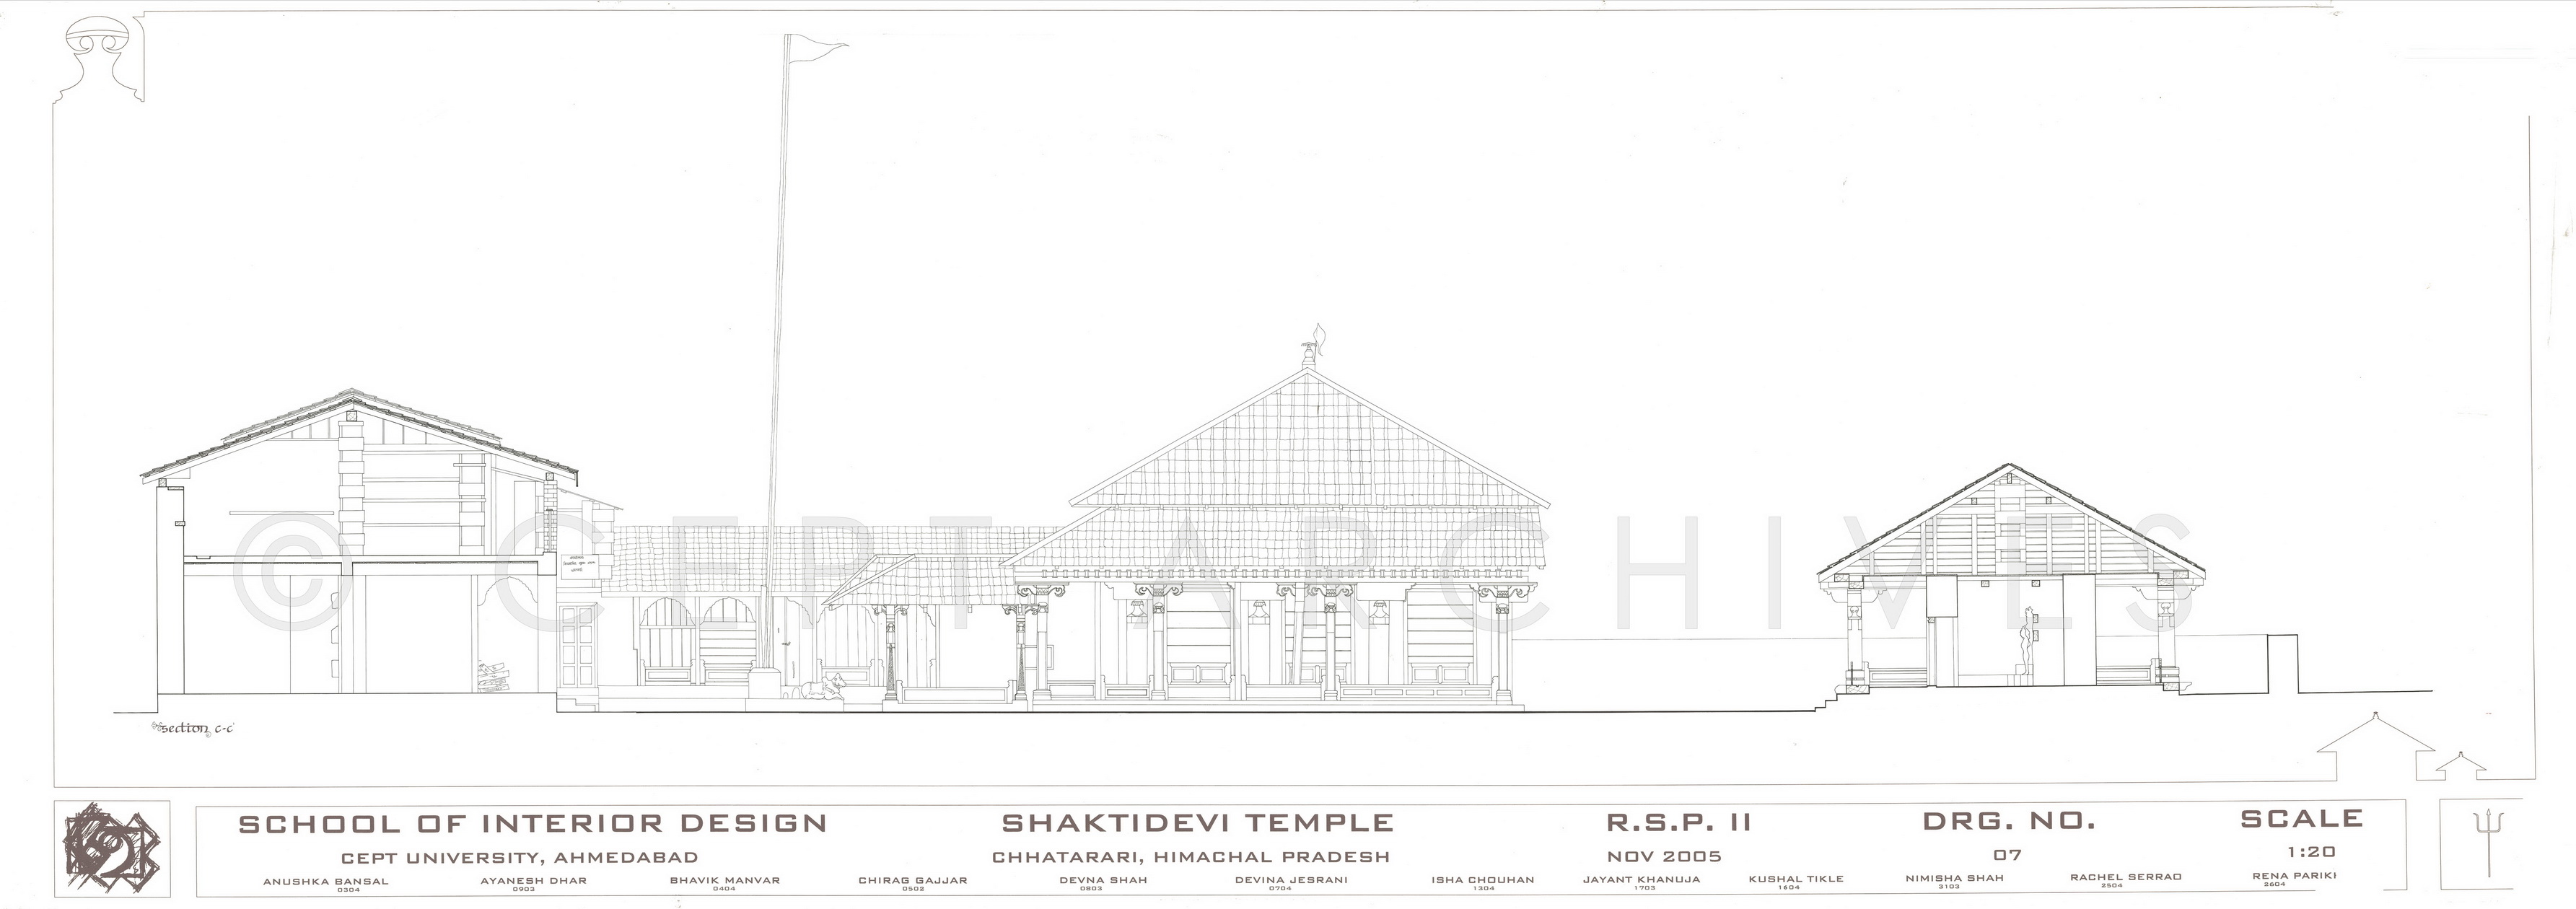 Shaktidevi Temple Chhatrari